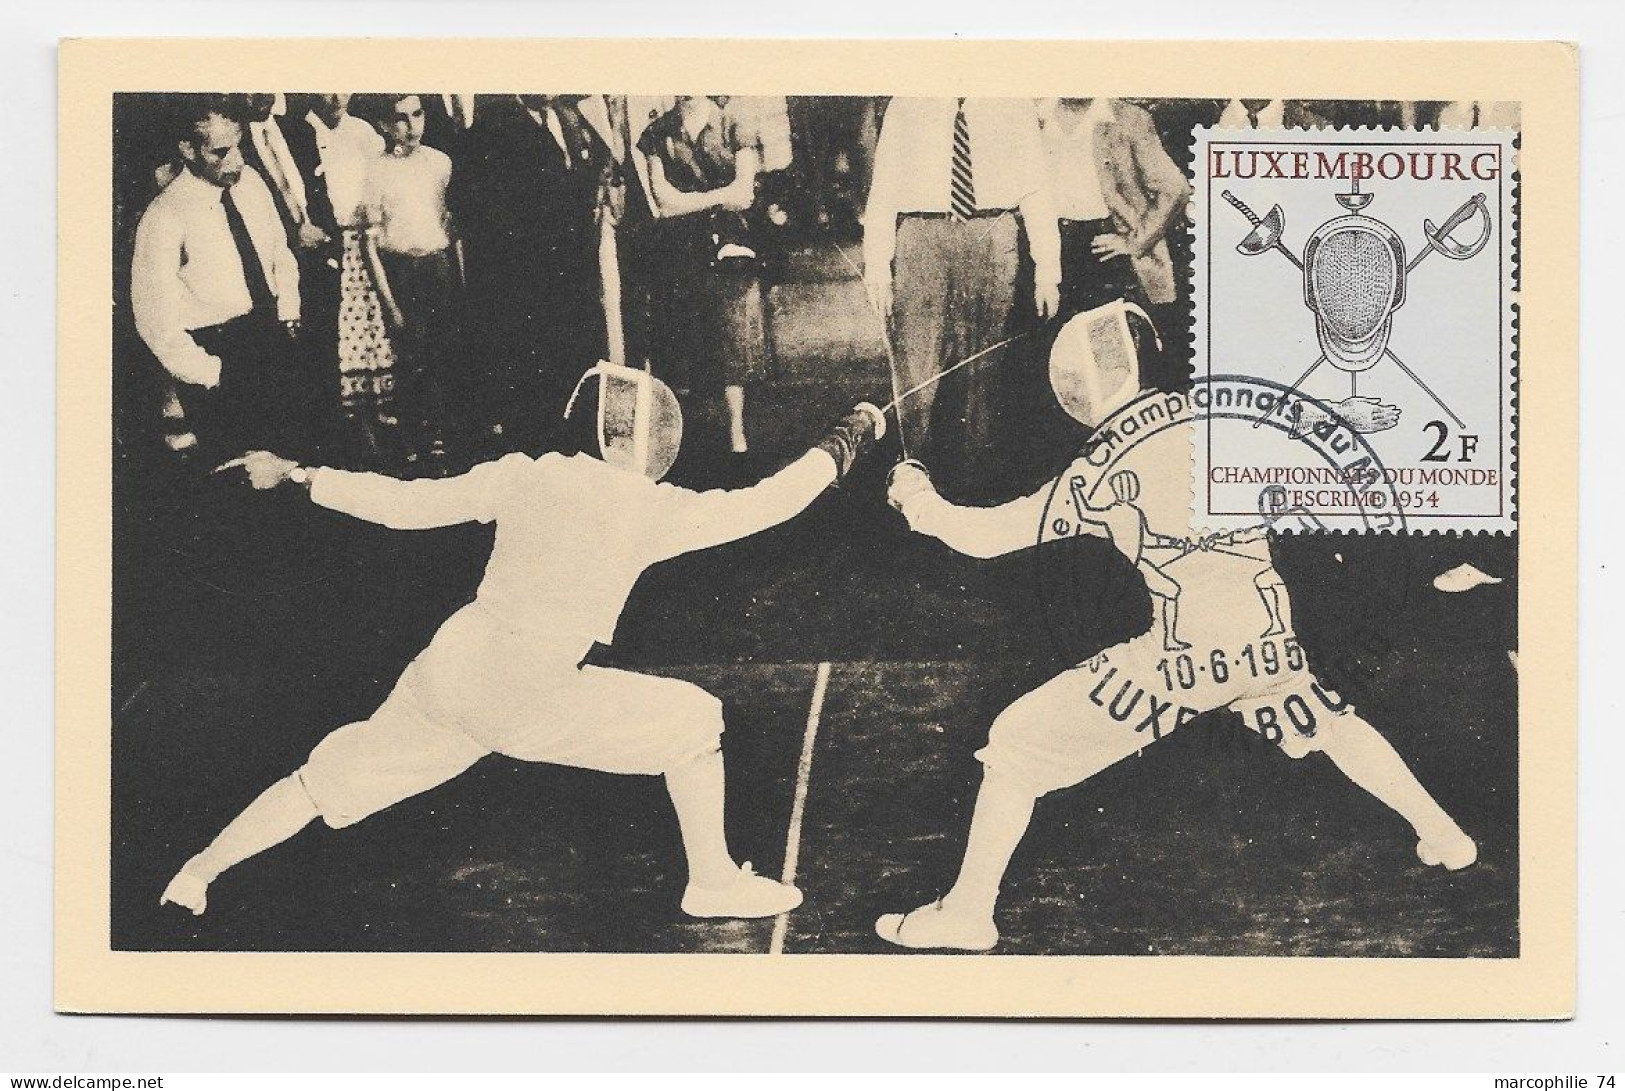 LUXEMBOURG 2FR ESCRIME CARTE MAXIMUM LUXEMBOURG 10.6.1954 CHAMPIONNAT DU MONDE - Fencing